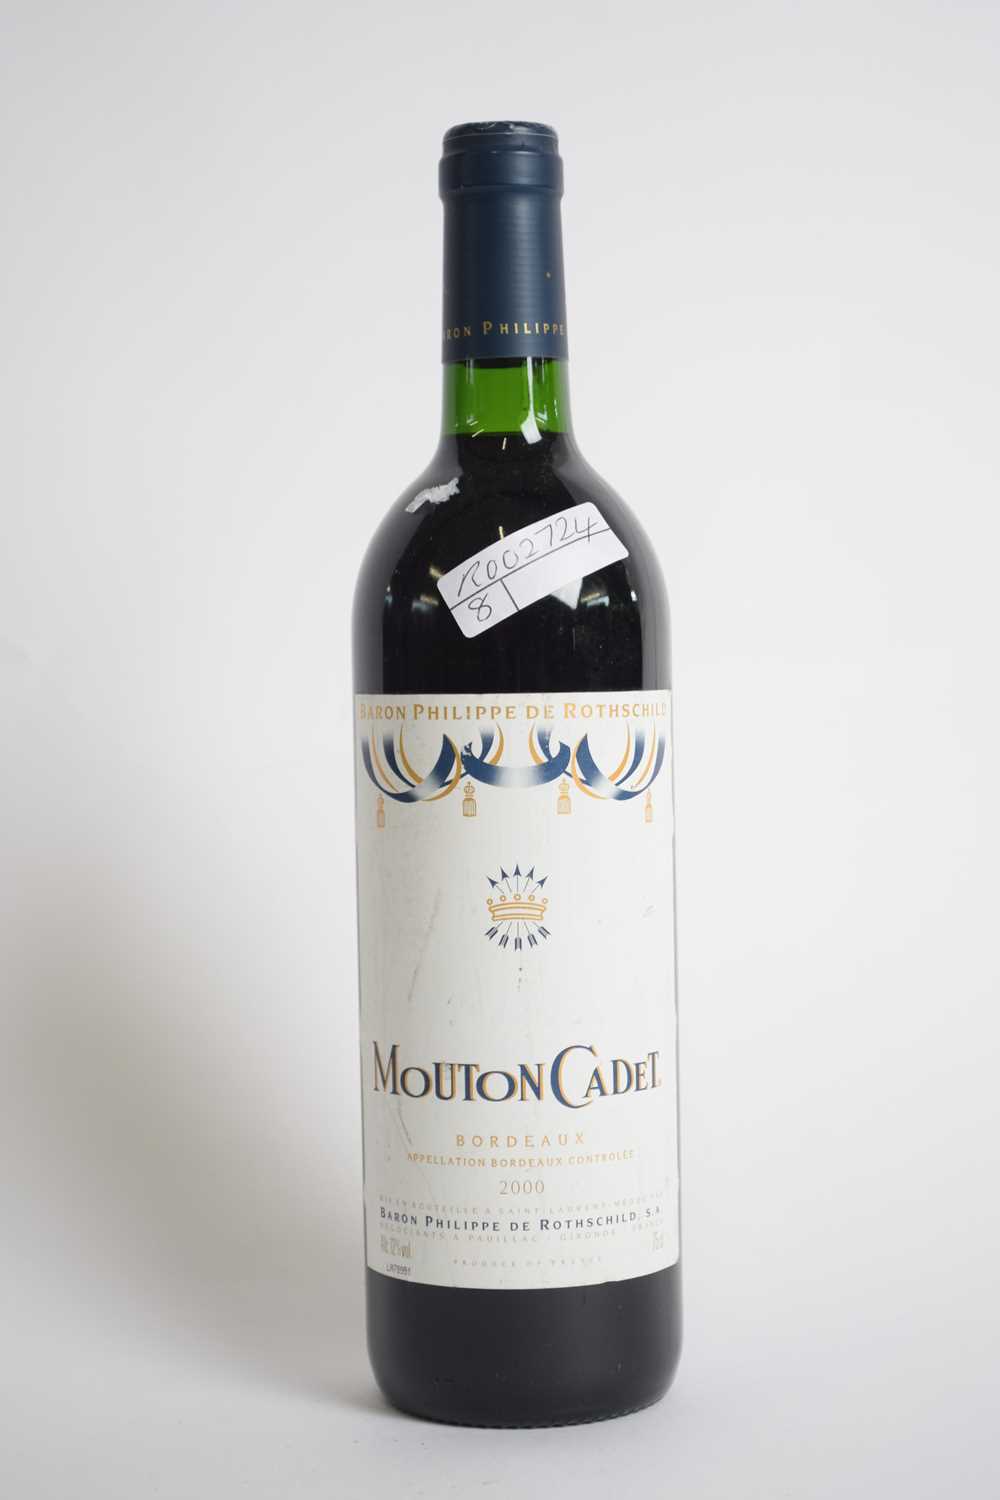 One bottle Mouton Cadet Bordeaux 2000, 75cl - Image 2 of 3